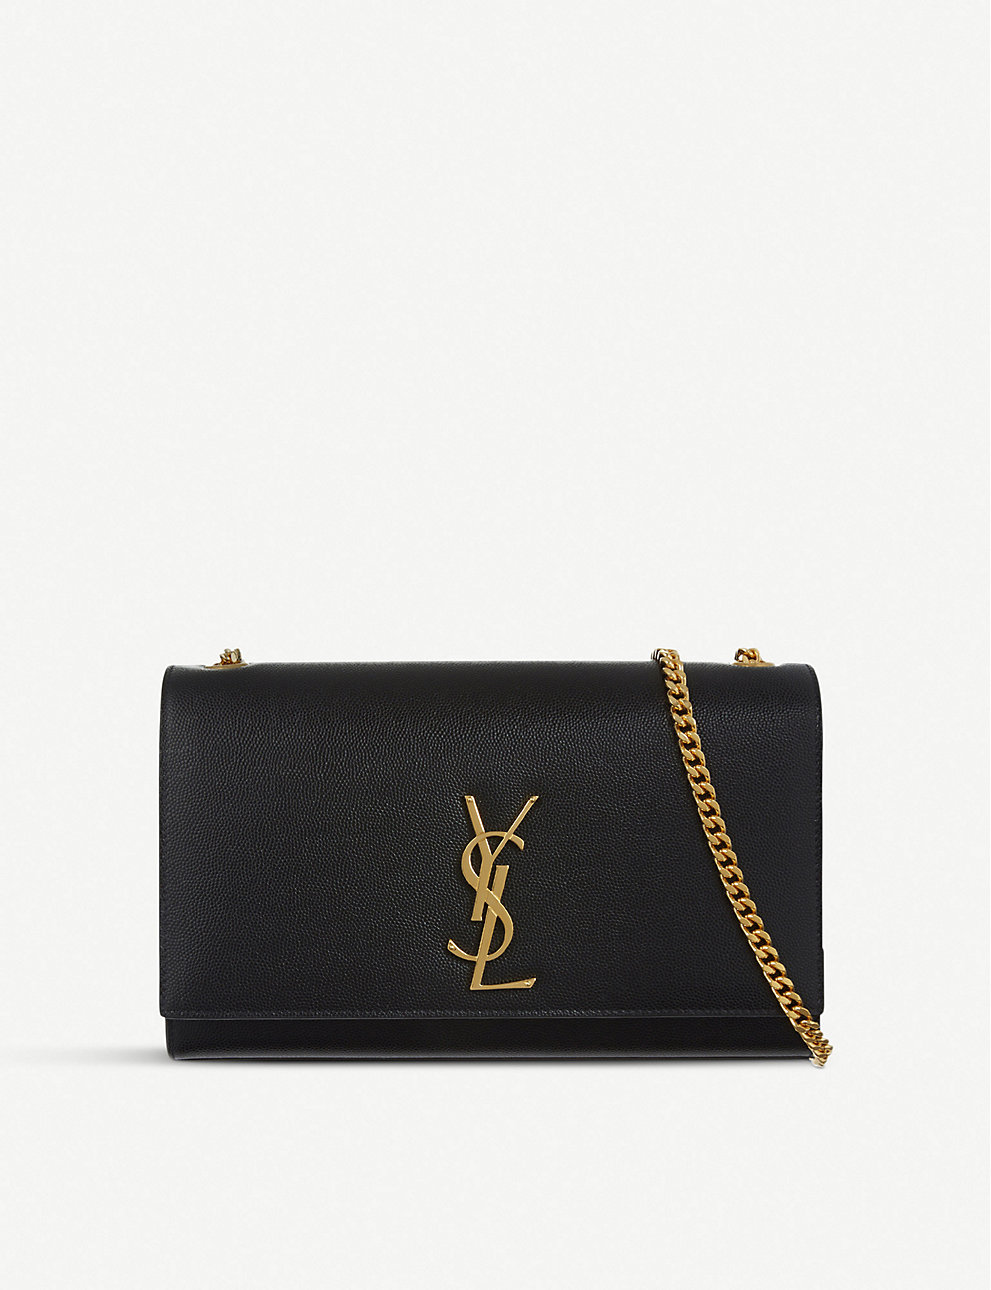 yo mismo Disipación Dedicación bolso mediano de piel saint laurent kate negro – Tienda de bolsos Yves  Saint Laurent de alta calidad